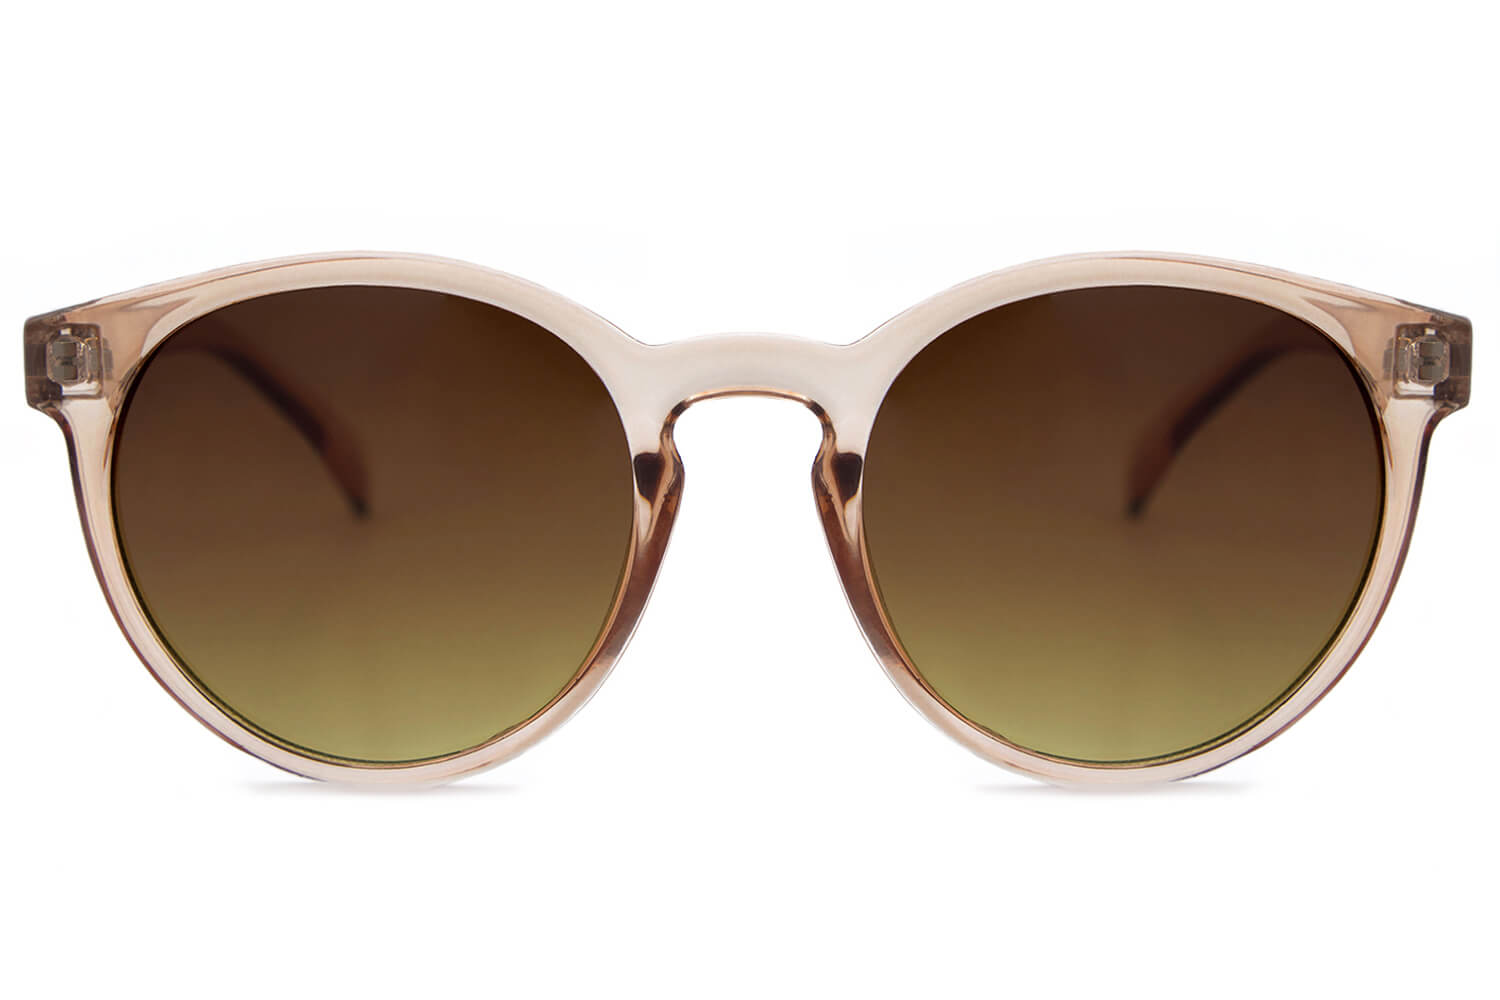 Solbriller til damer | +400 styles | 5 stjerner på Trustpilot FashionZone DK